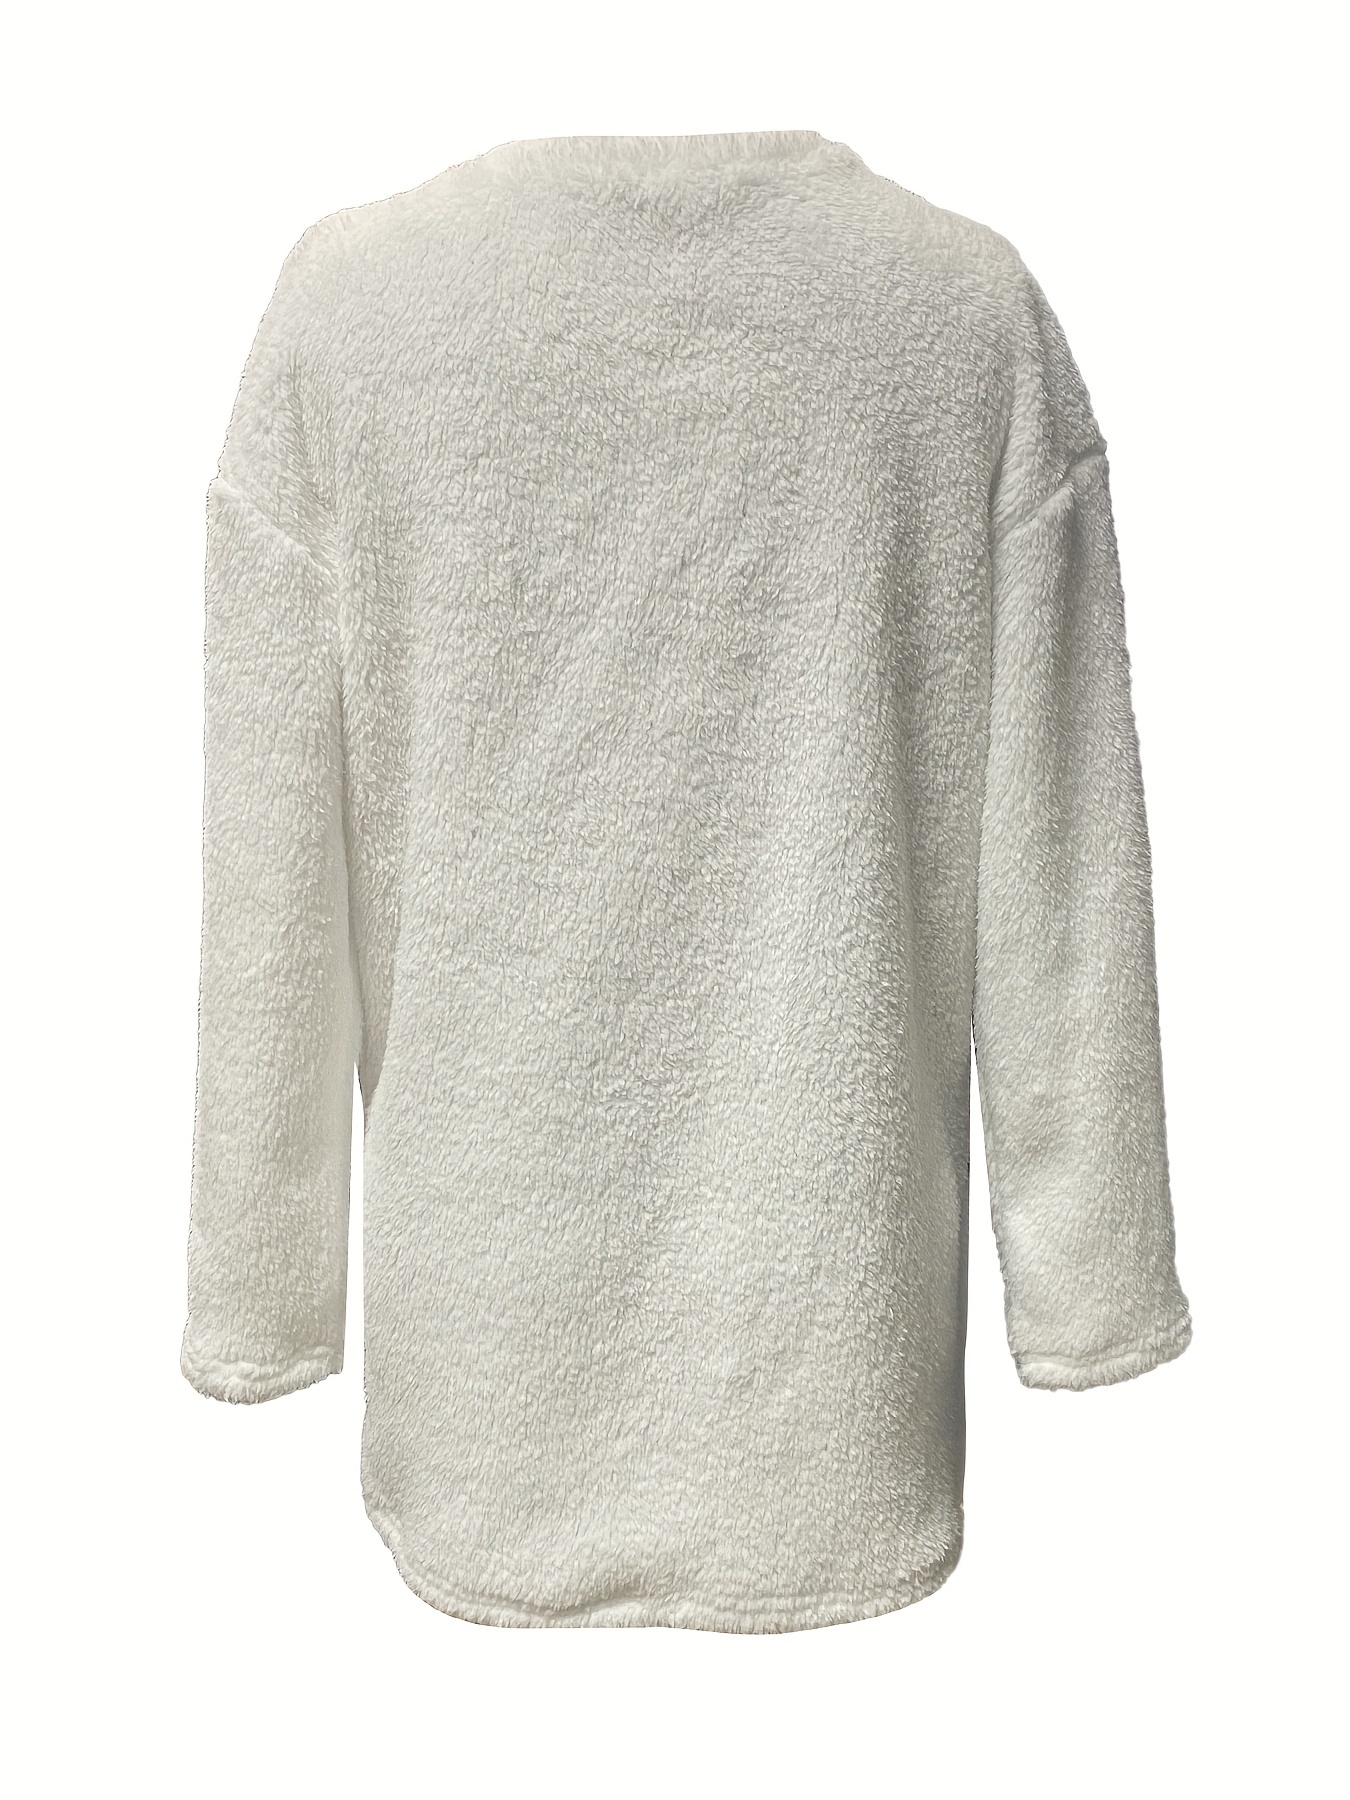 letter print patched pockets sweatshirt casual drop shoulder button decor plush sweatshirt womens clothing details 11